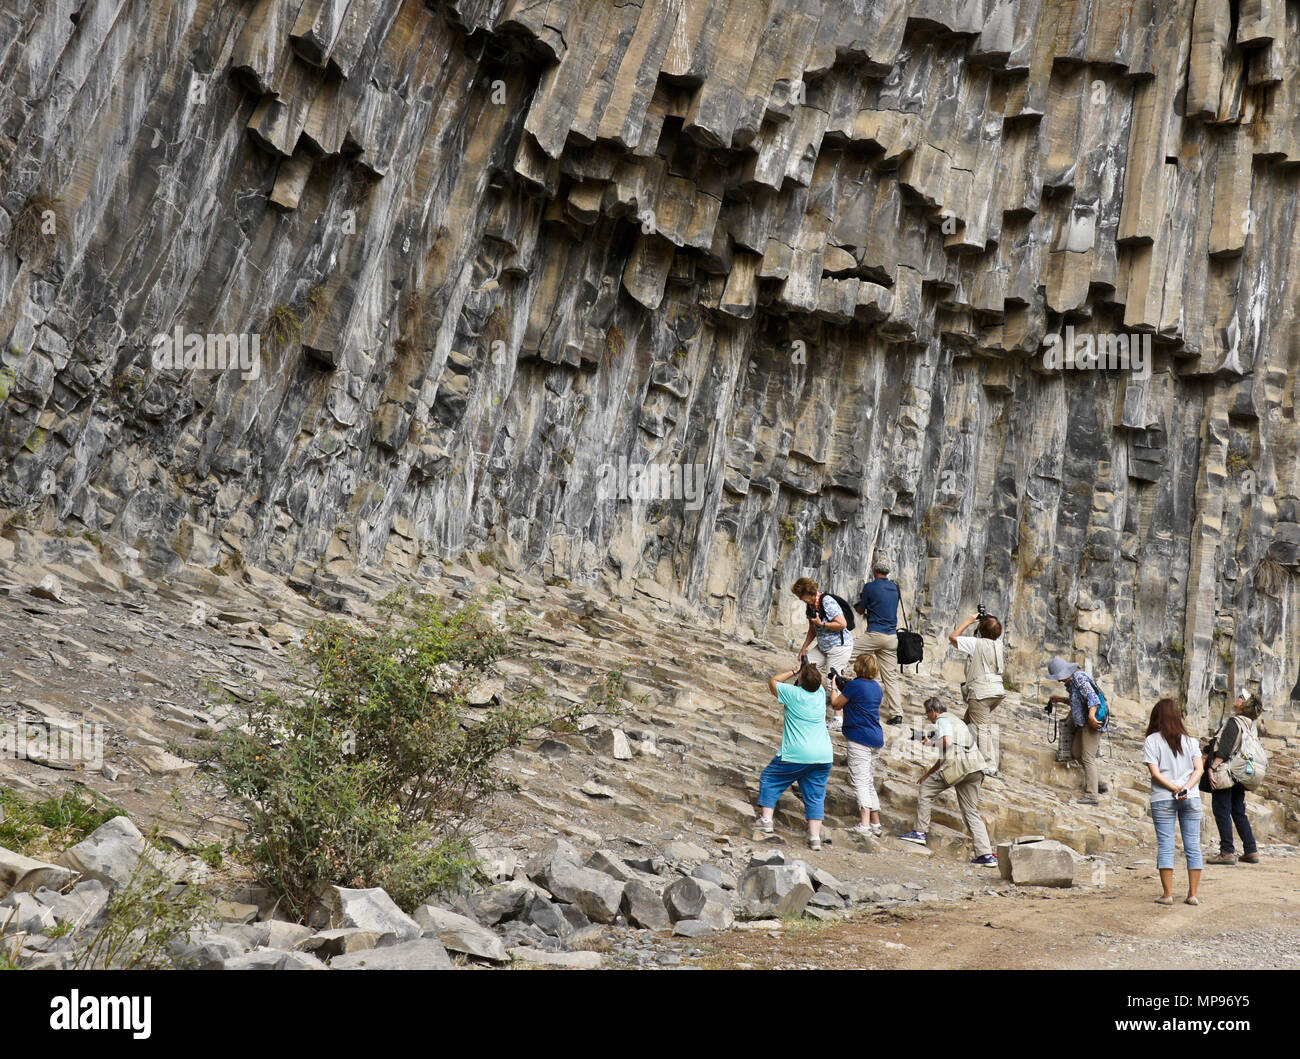 Garni, Armenia: En Garni Gorge, turistas fotografían una formación geológica de columnas de basalto octogonal llamado Sinfonía de piedras. Foto de stock